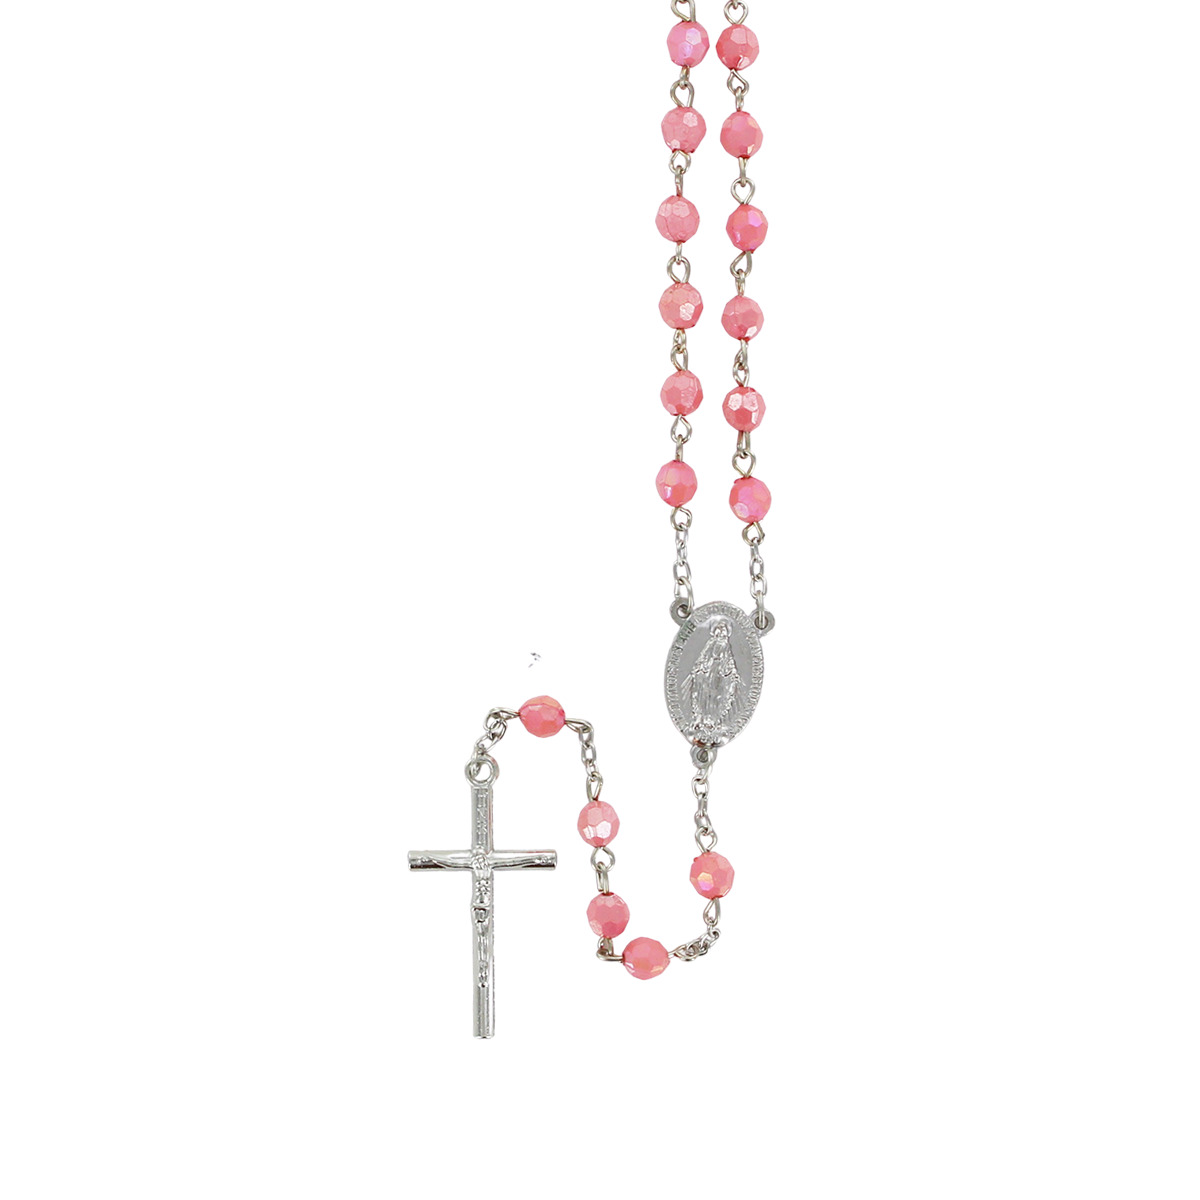 Chapelet grains à facettes, Ø 7 mm, chaîne couleur argentée, longueur au cœur 34 cm, croix avec Christ.